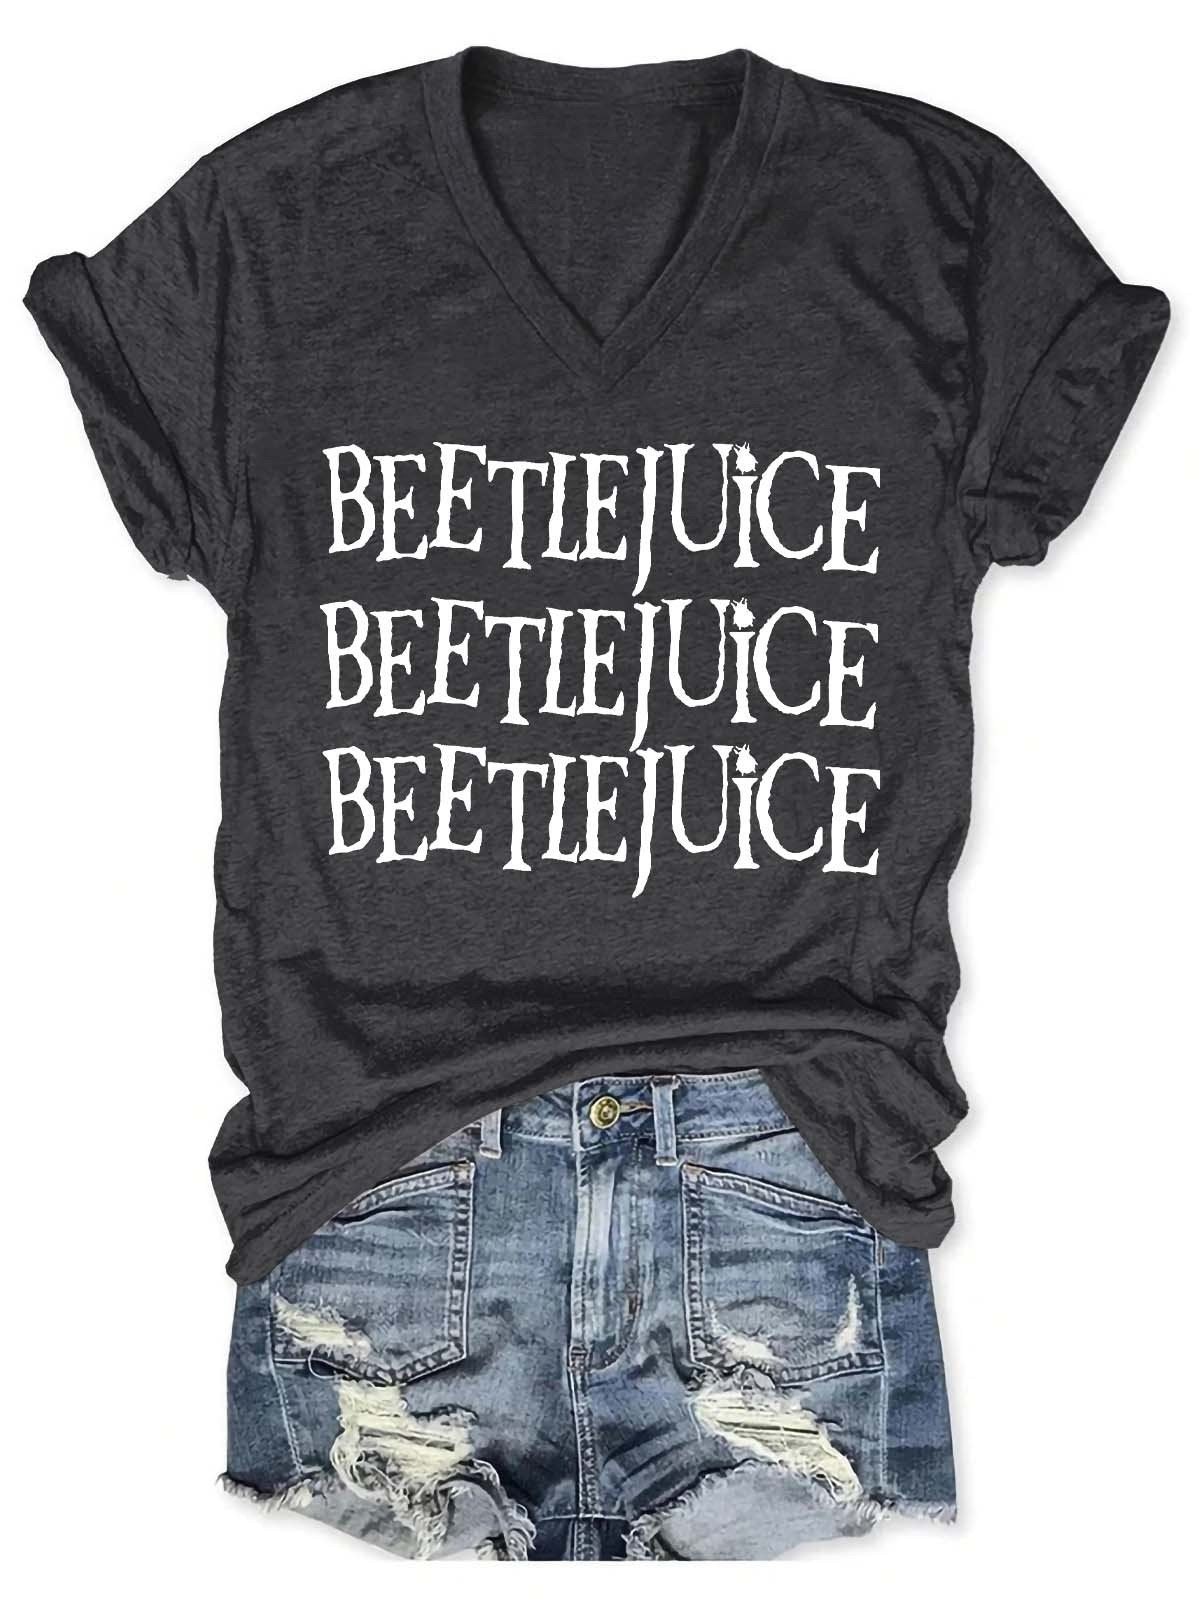 Women's Beetlejuice V-Neck T-Shirt - Outlets Forever